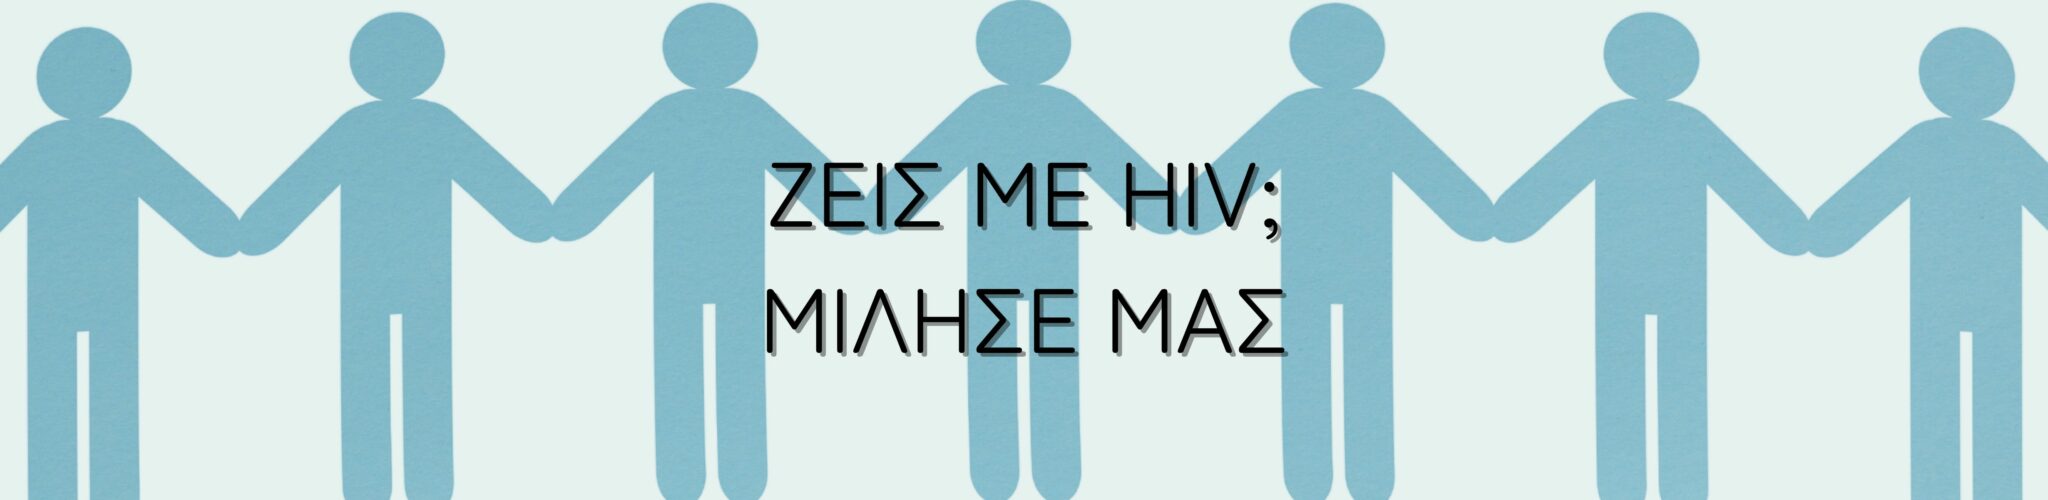 Εικόνα για το άρθρο “Ζεις με HIV; Μίλησε μαζί μας!”